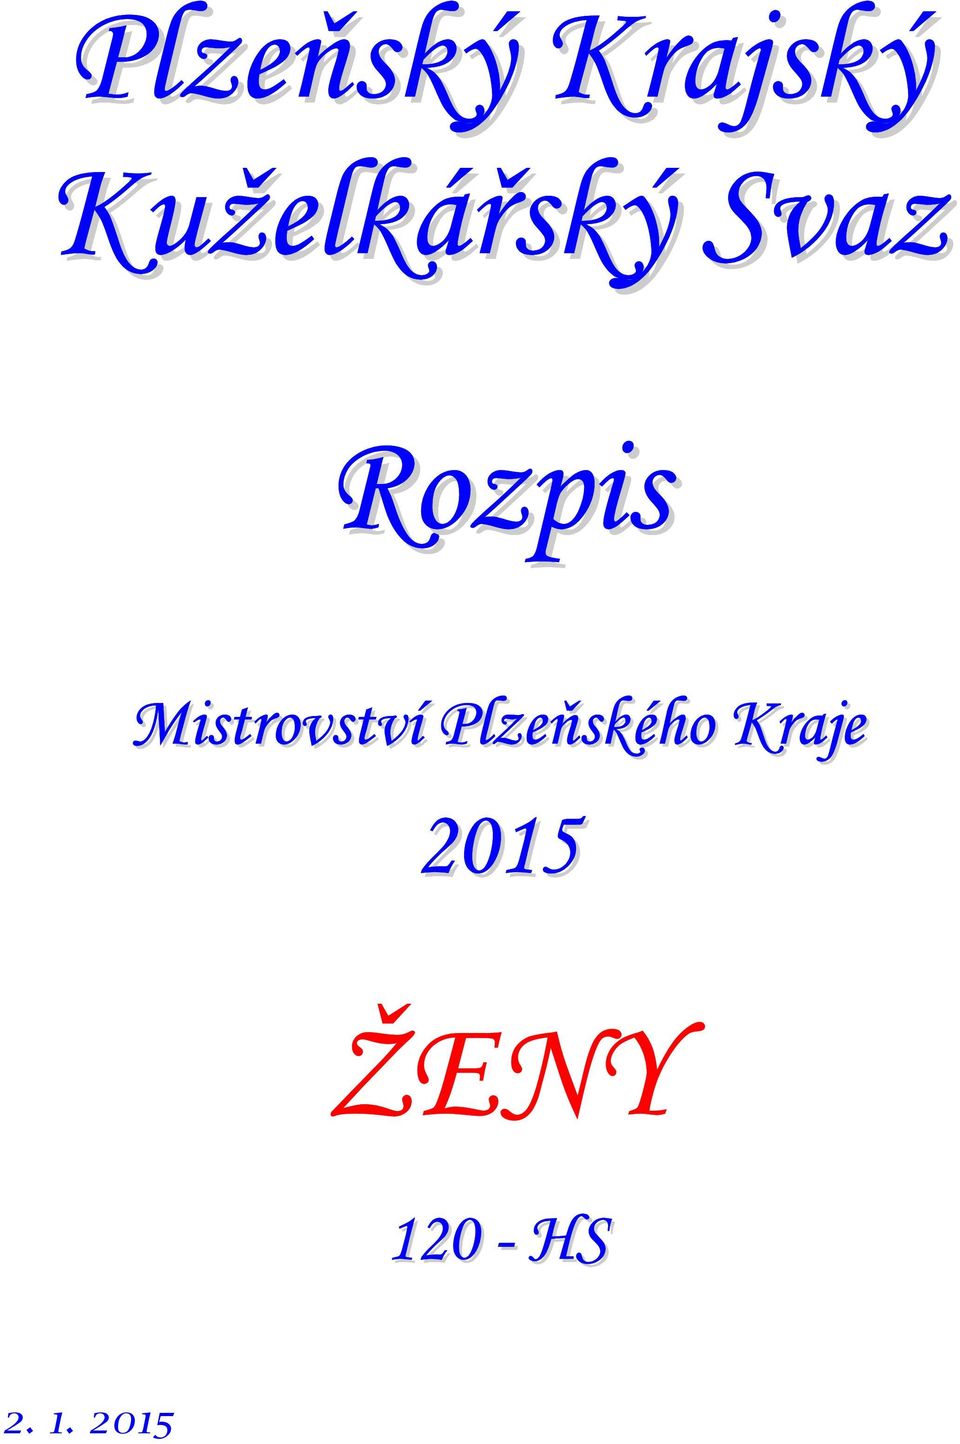 Mistrovství Plzeňského